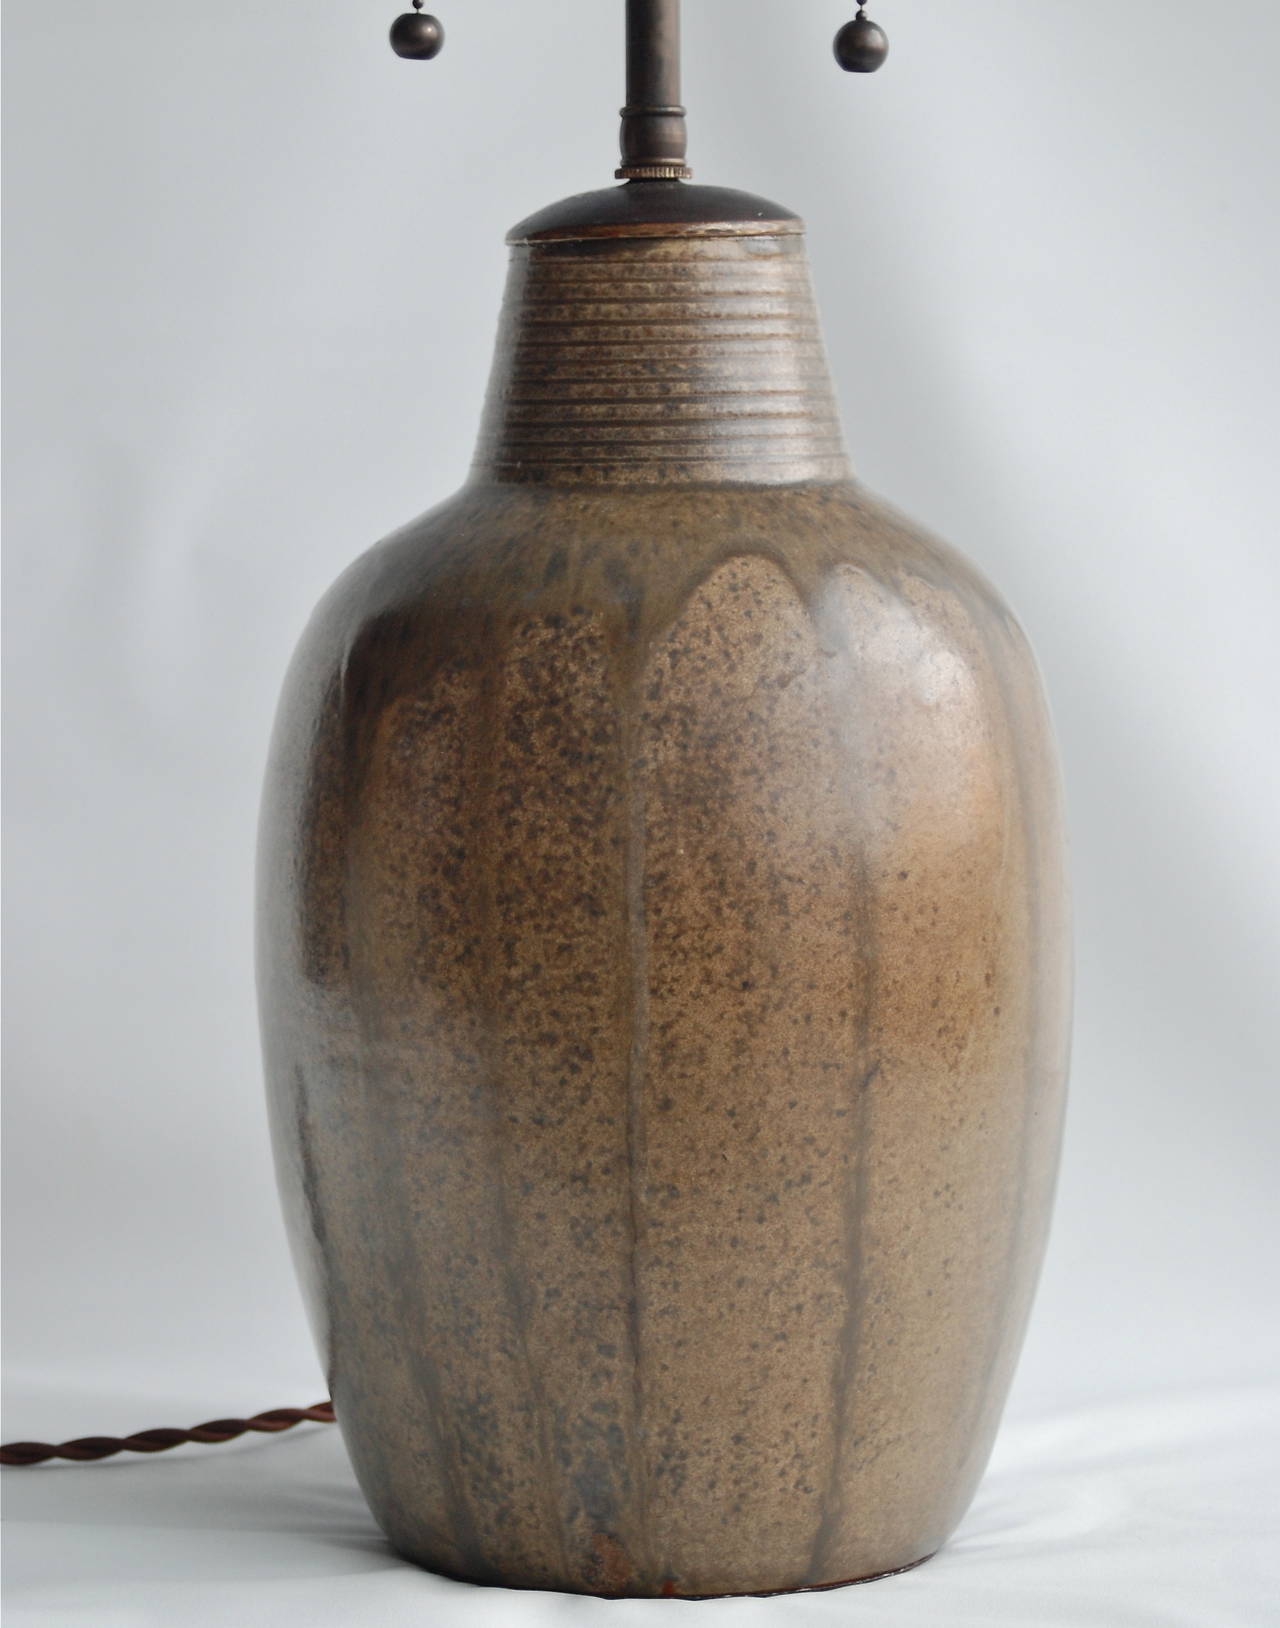 Patrick Nordström, lampe de table, céramique.
Une lampe de table de Patrick Nordstrom (1870-1929), Suède. Céramique à glaçure brune. Marqué : 